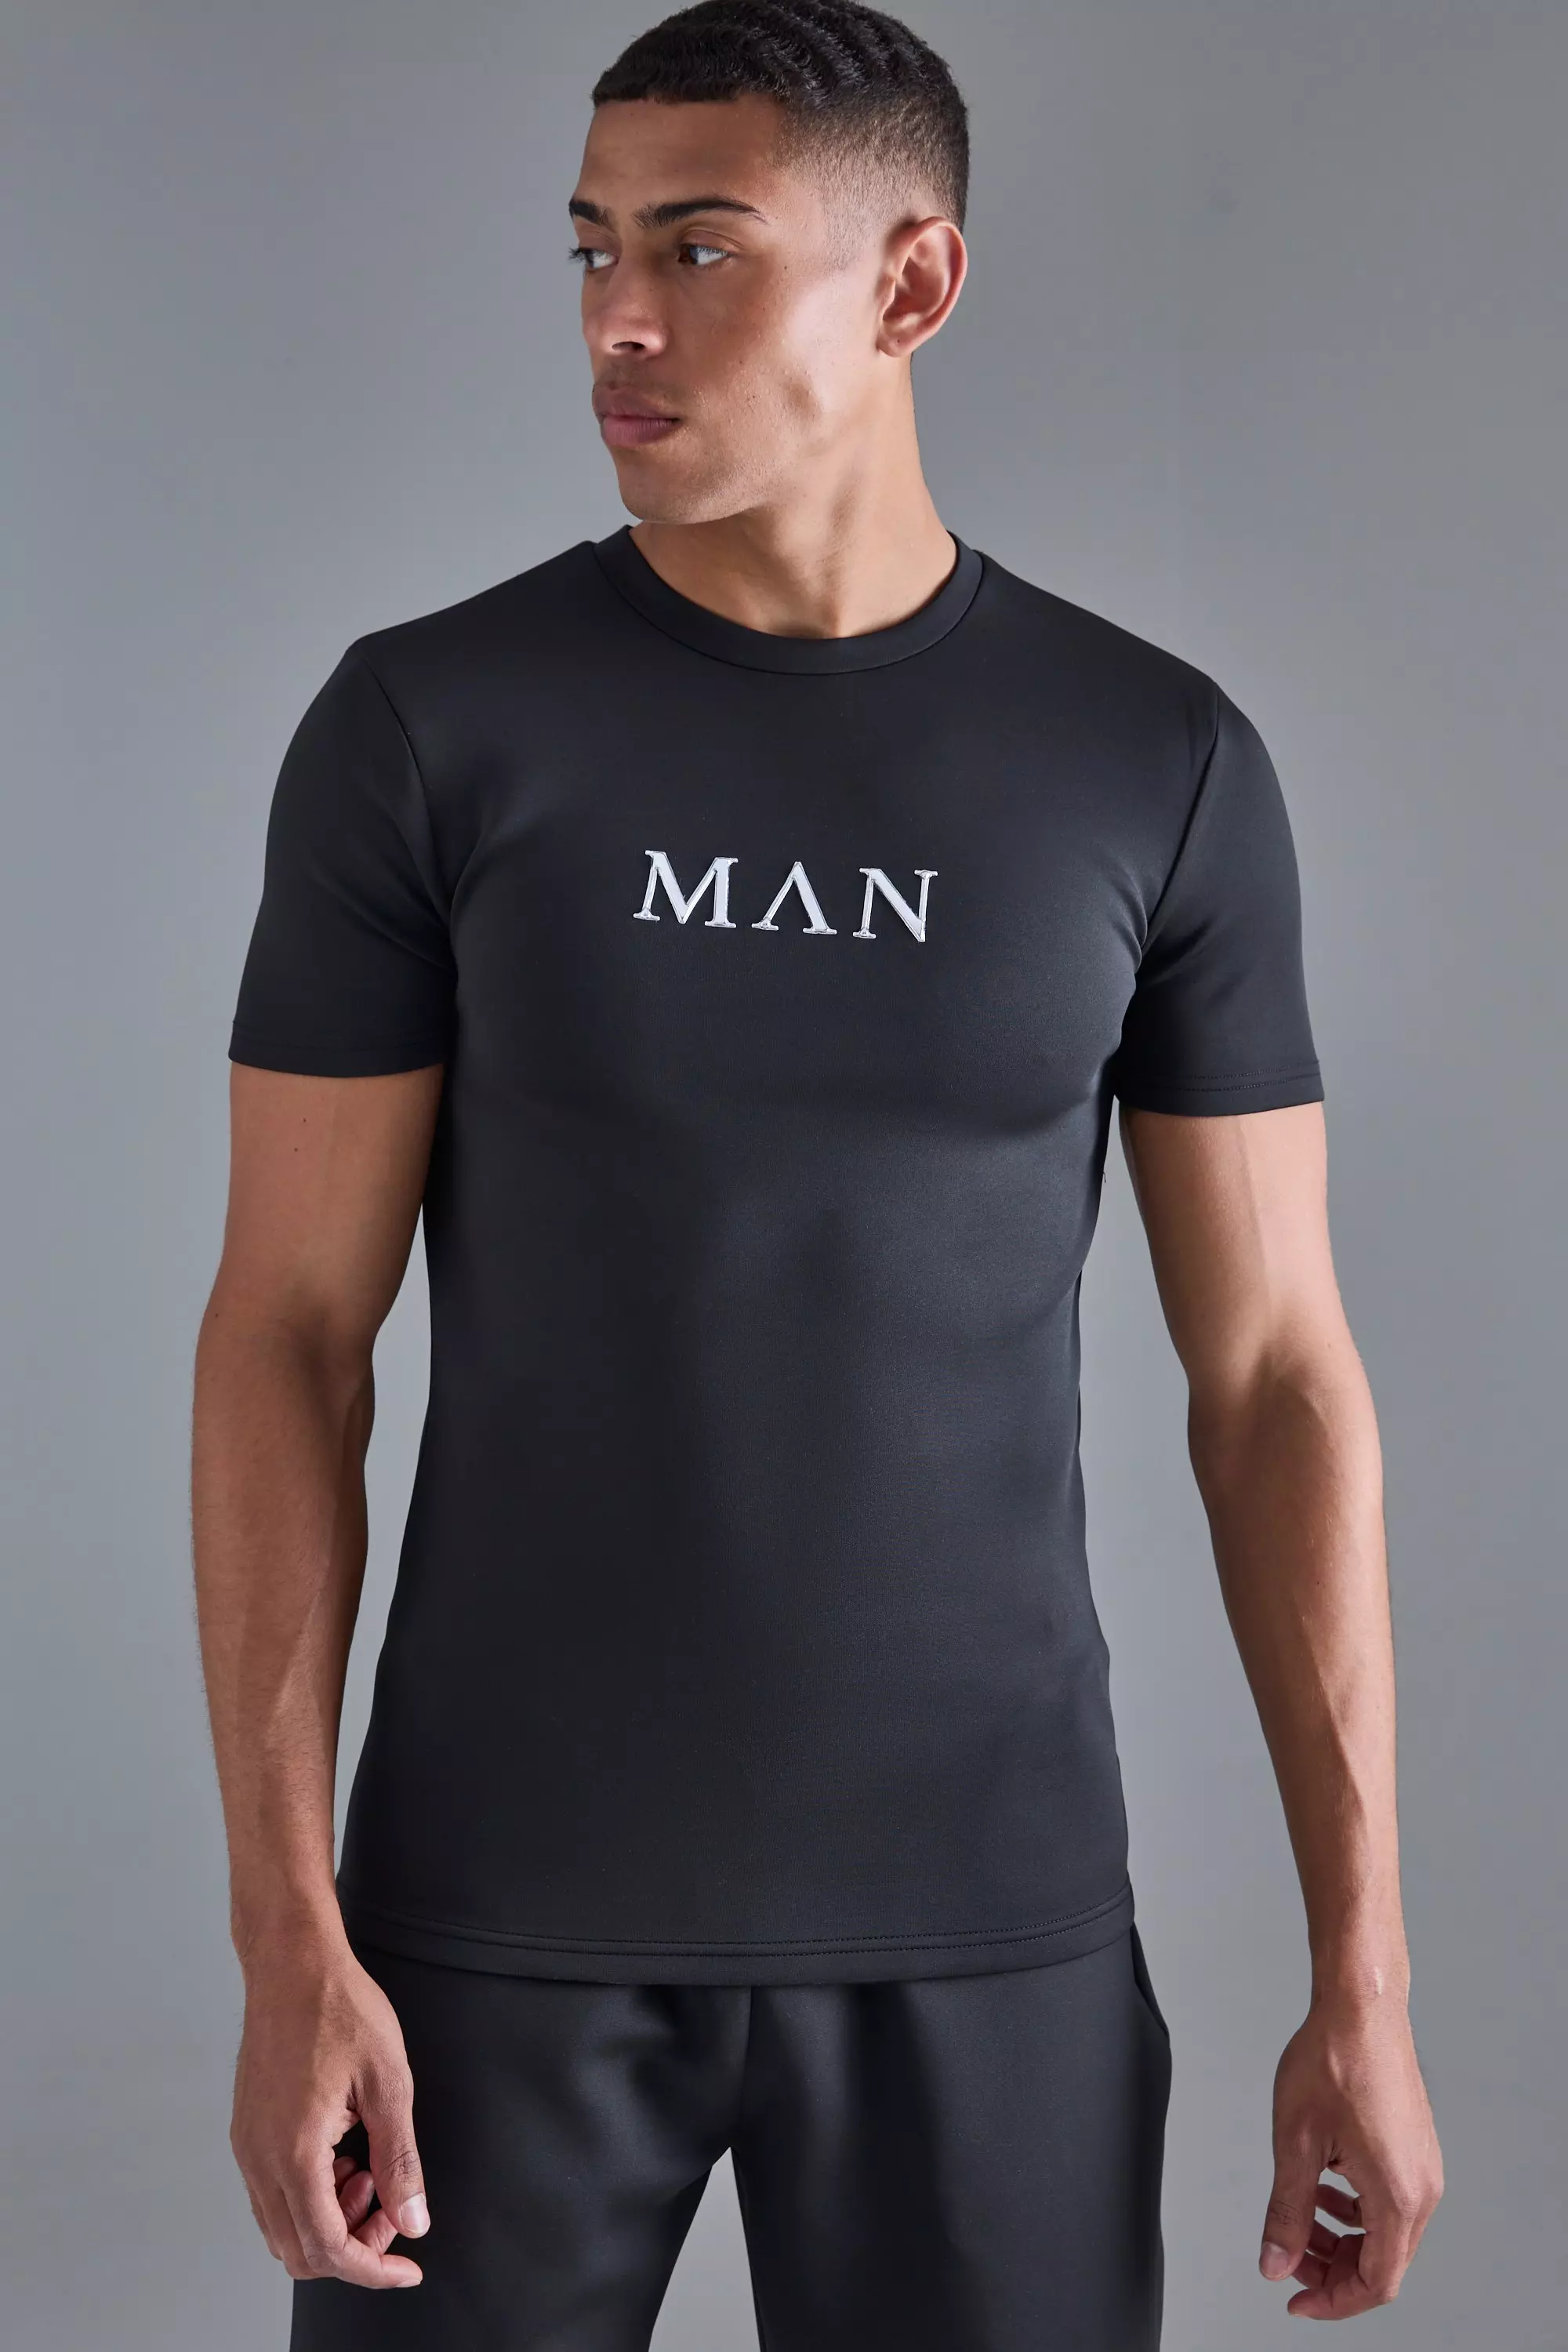 Man Muscle Fit Scuba T-shirt Black